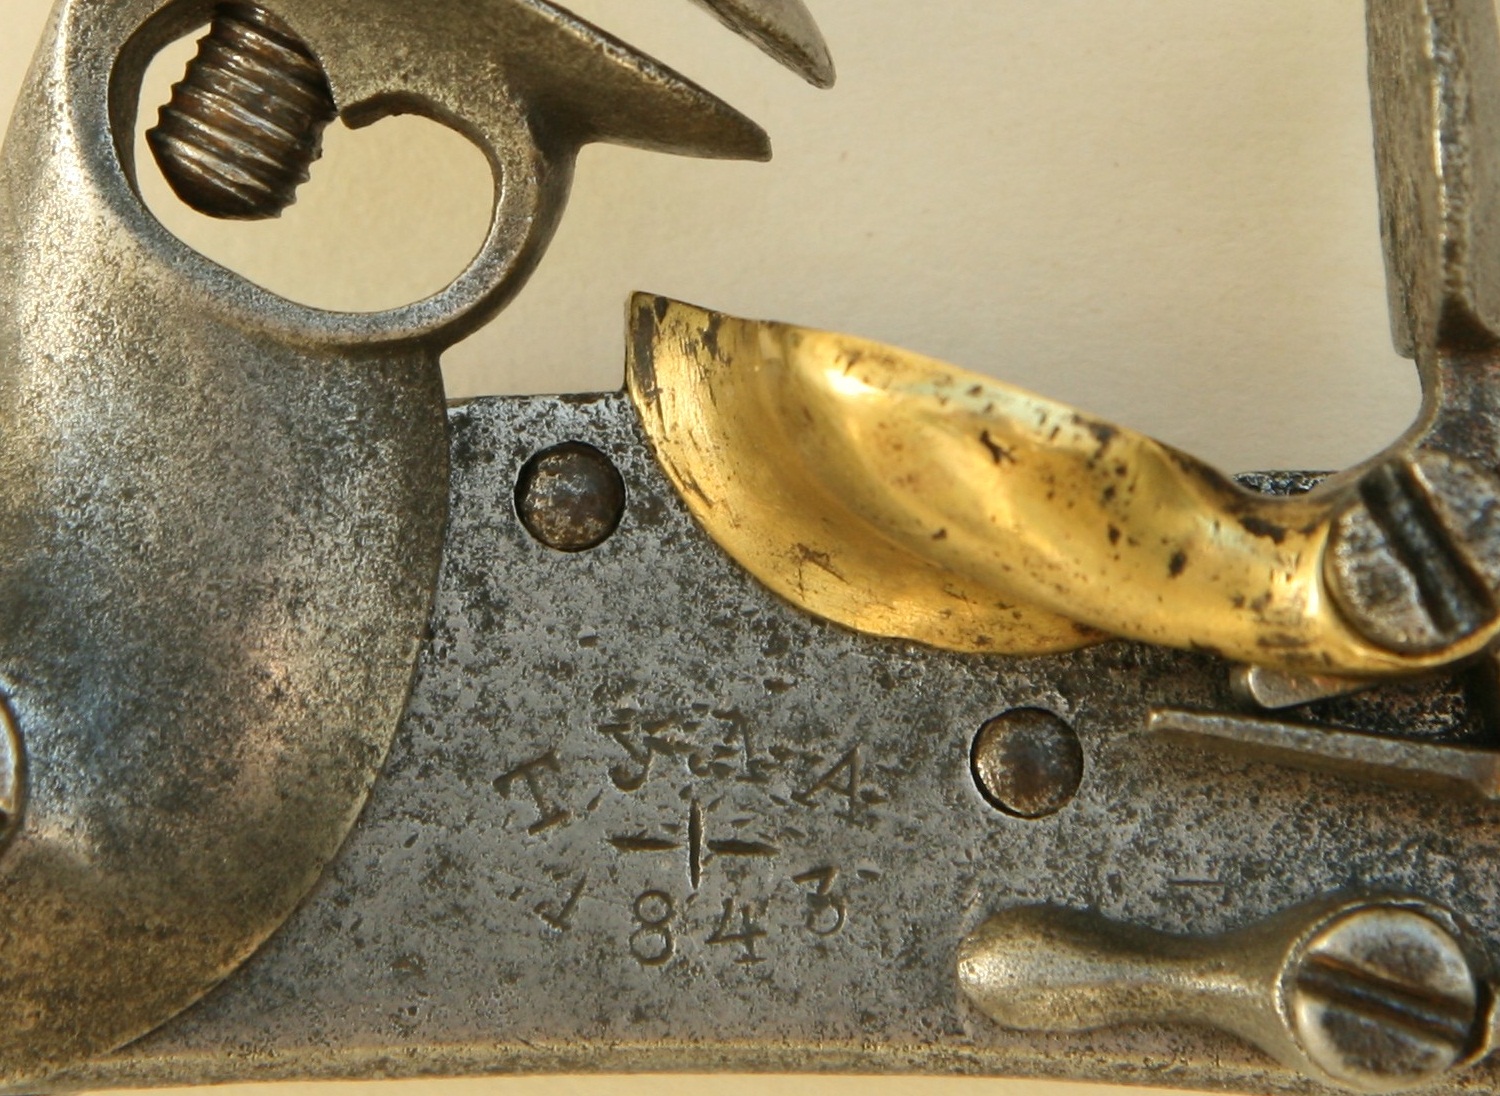 The Pattern 1839 Russian cavalry flint pistol 